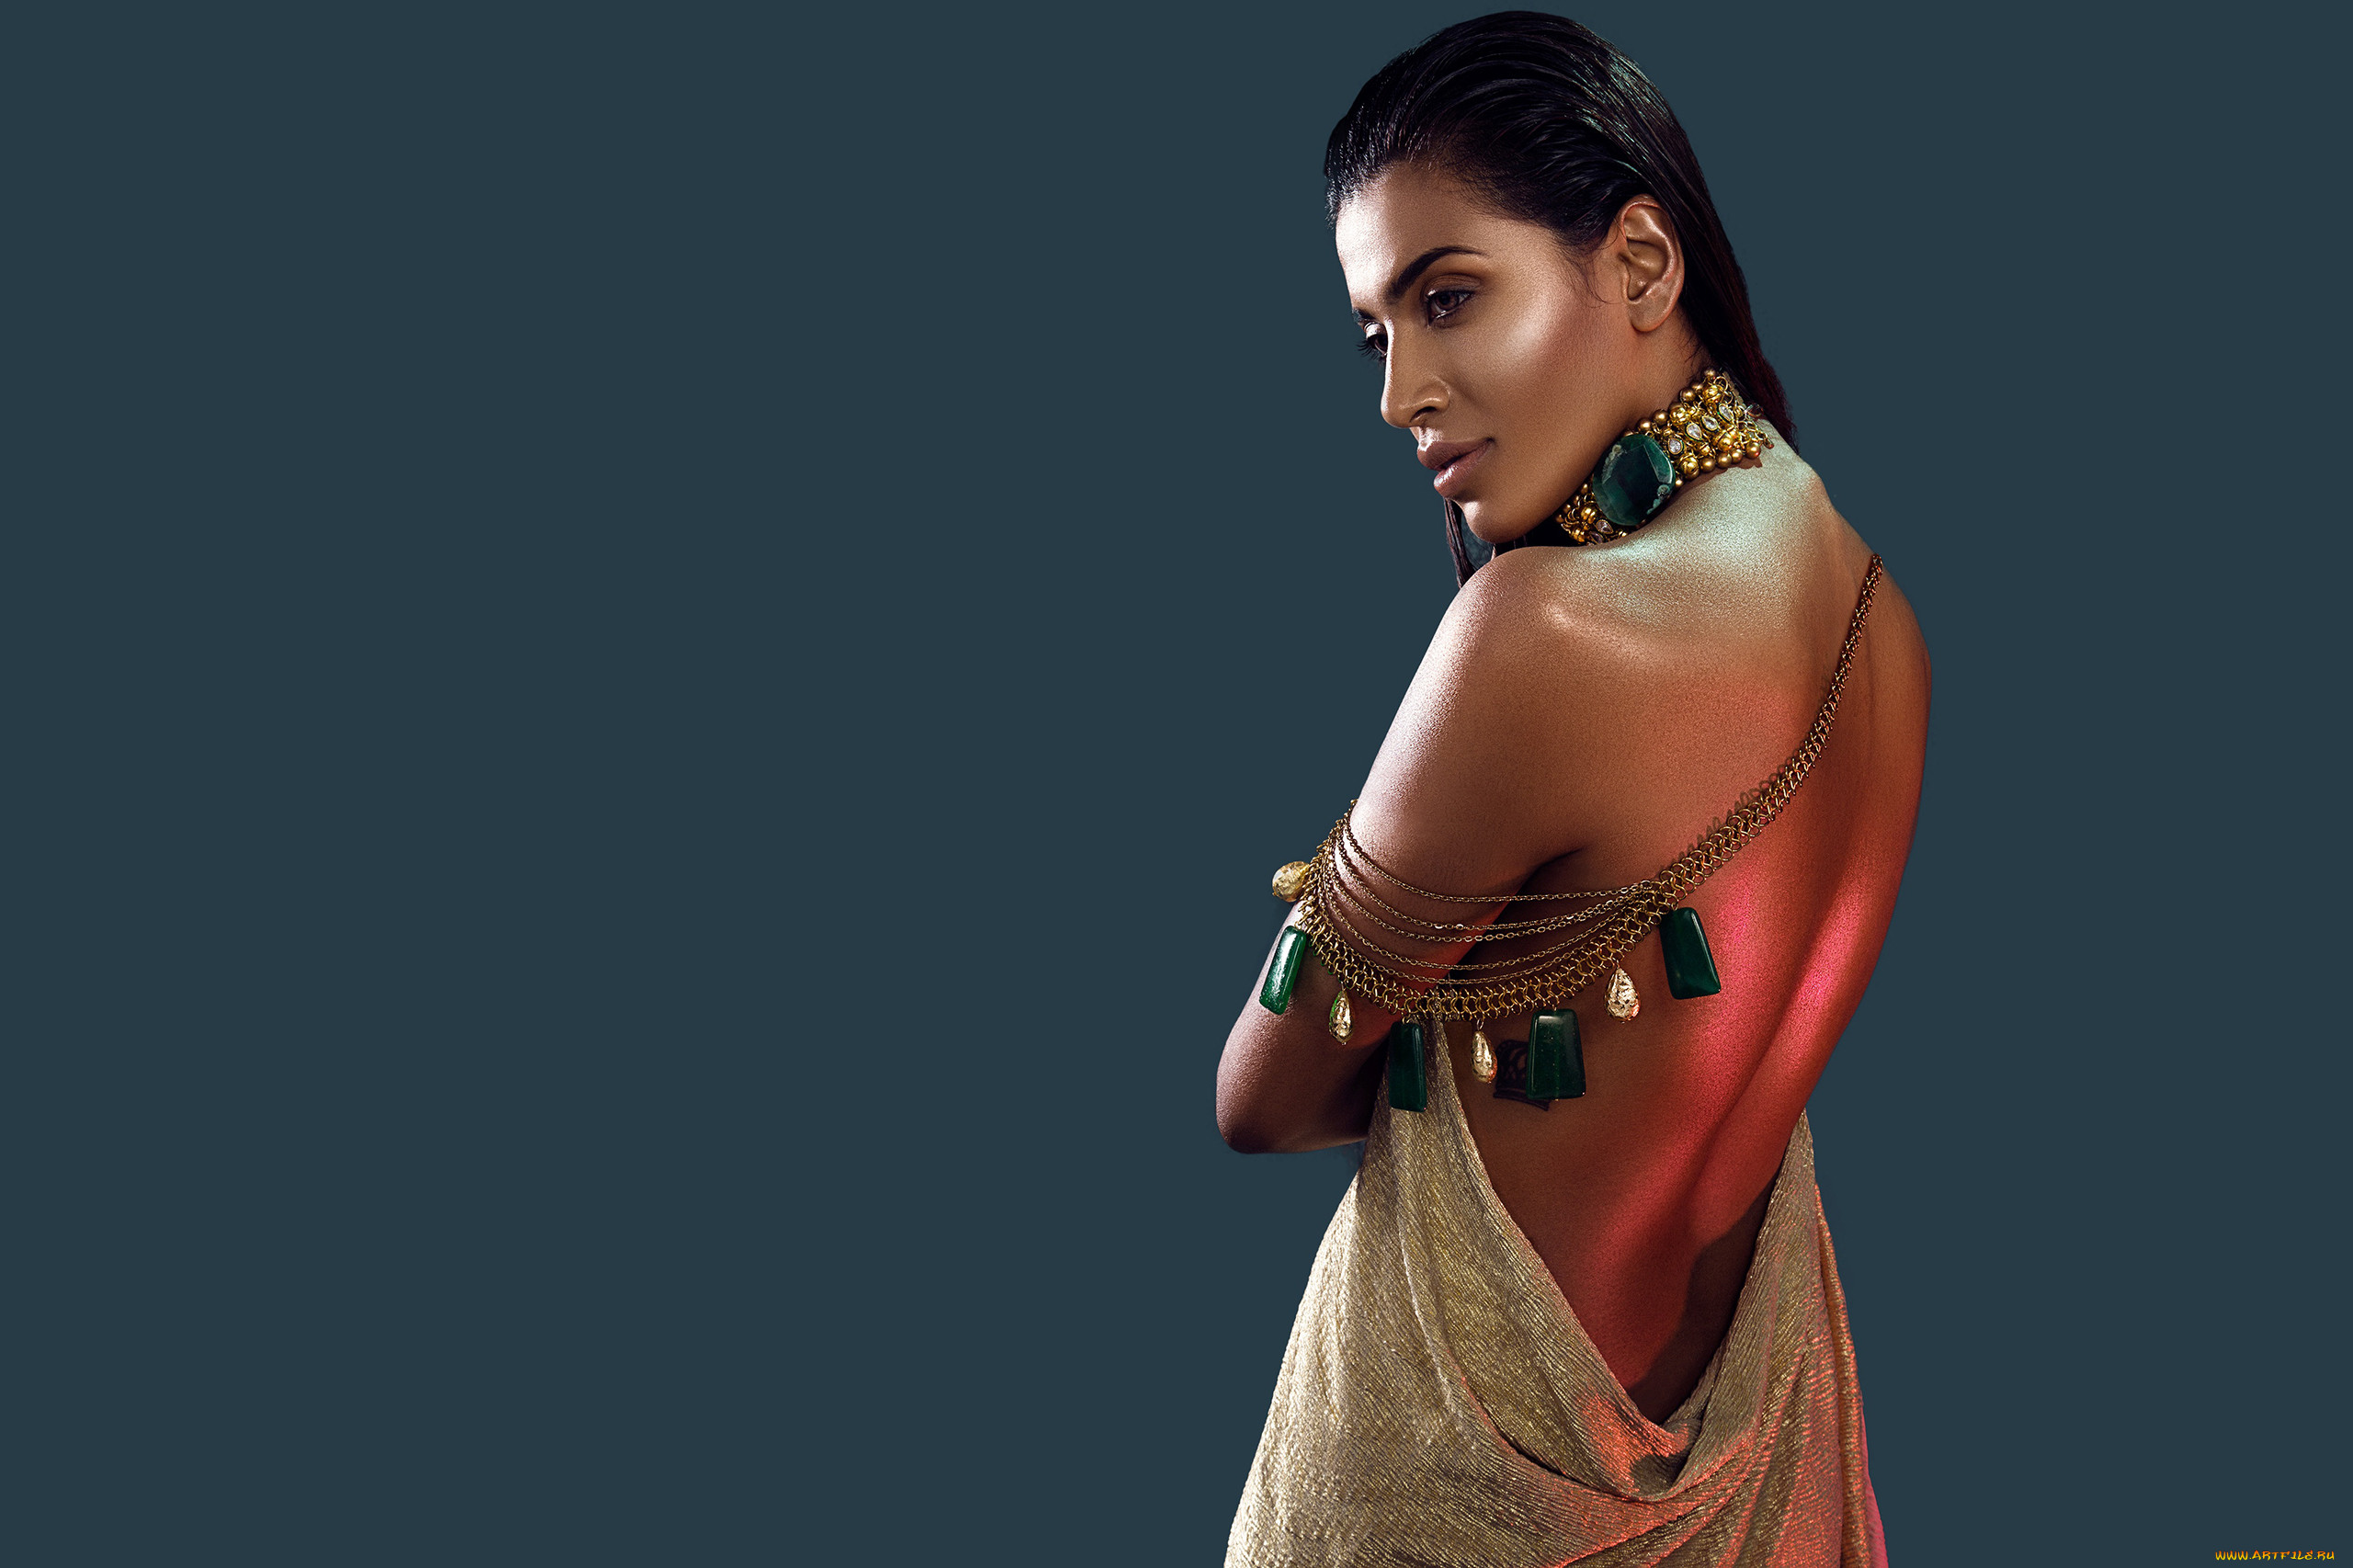 Индийские красотки готовы показывать себя со всех сторон поражая натуральной сексуальностью своих тел 